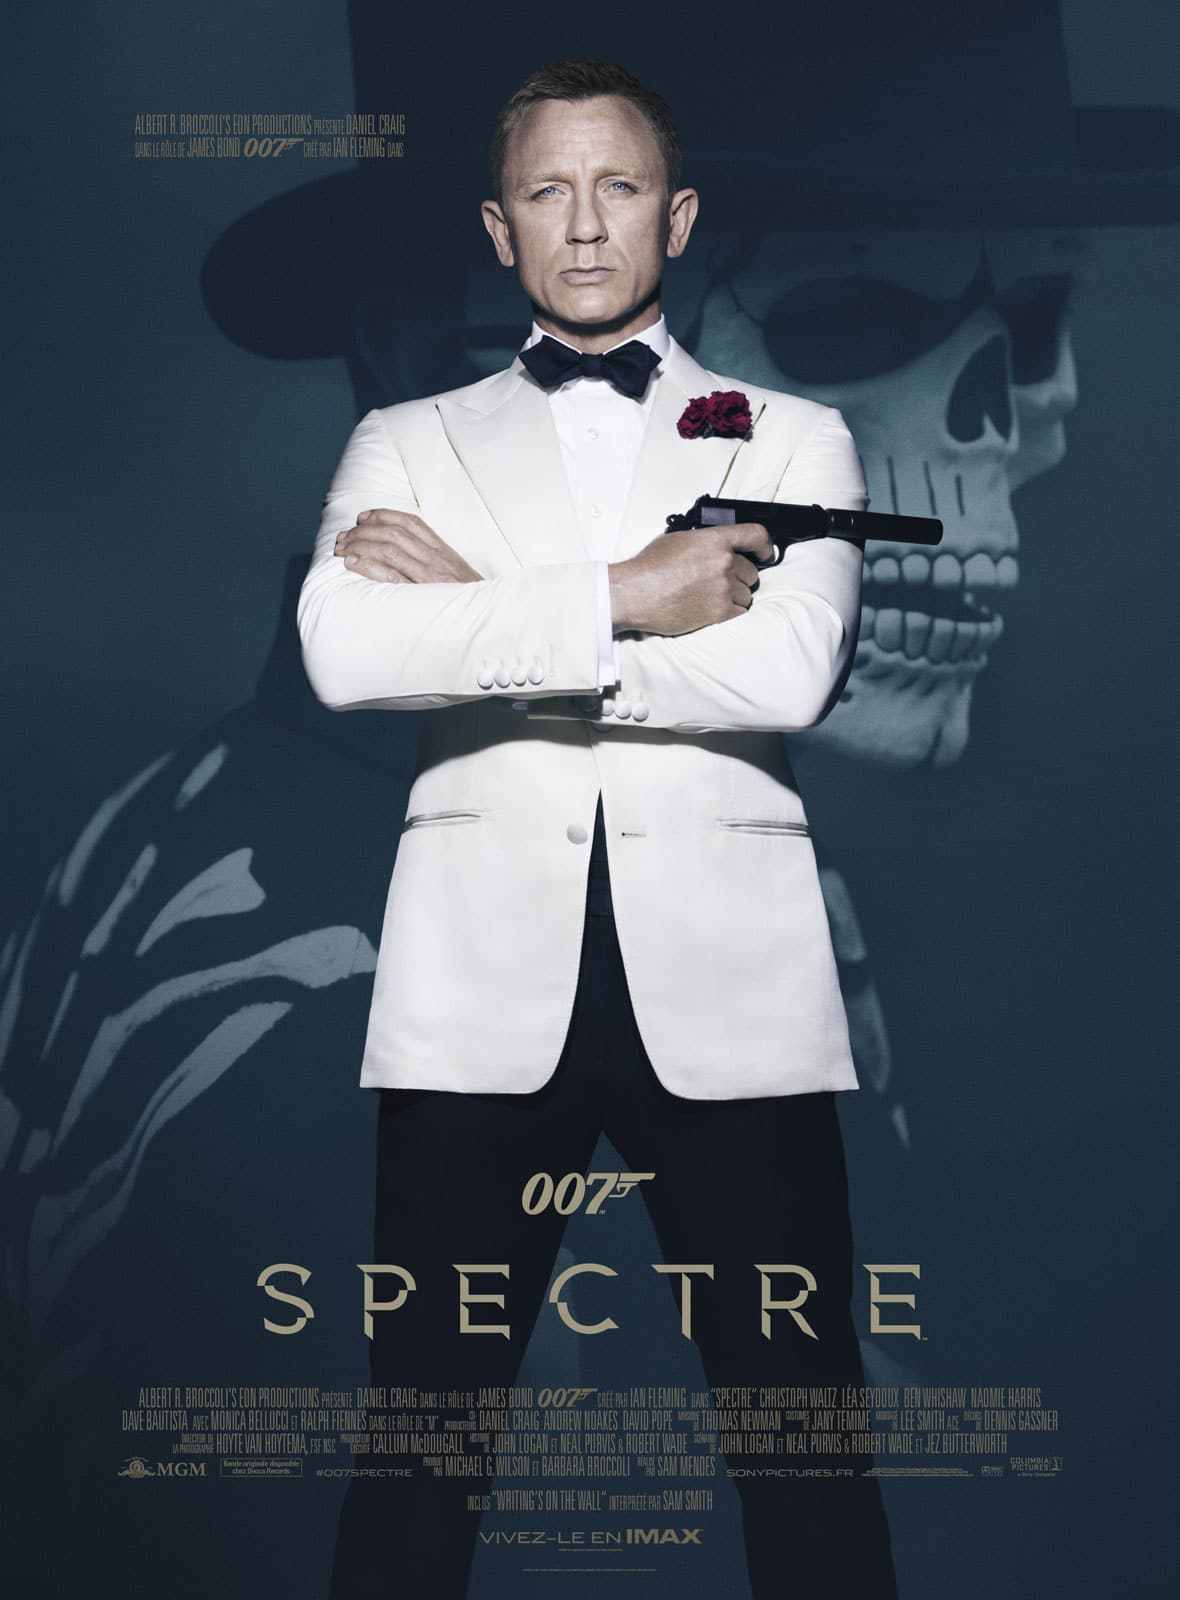 [CRITIQUE] 007 SPECTRE